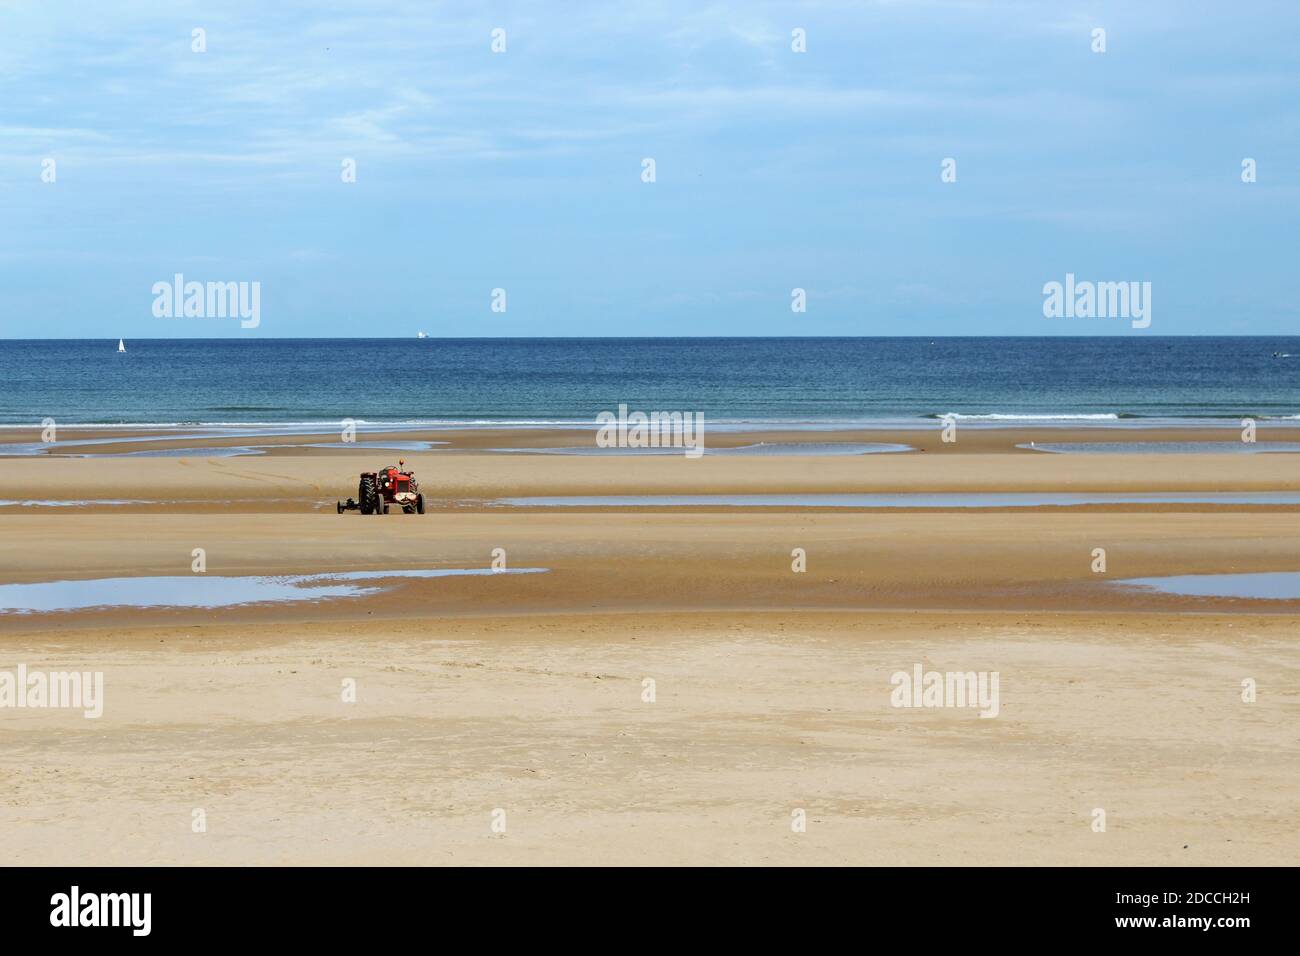 Ein Roter Traktor am Strand von Omaha Beach, Normandie, Frankreich Banque D'Images